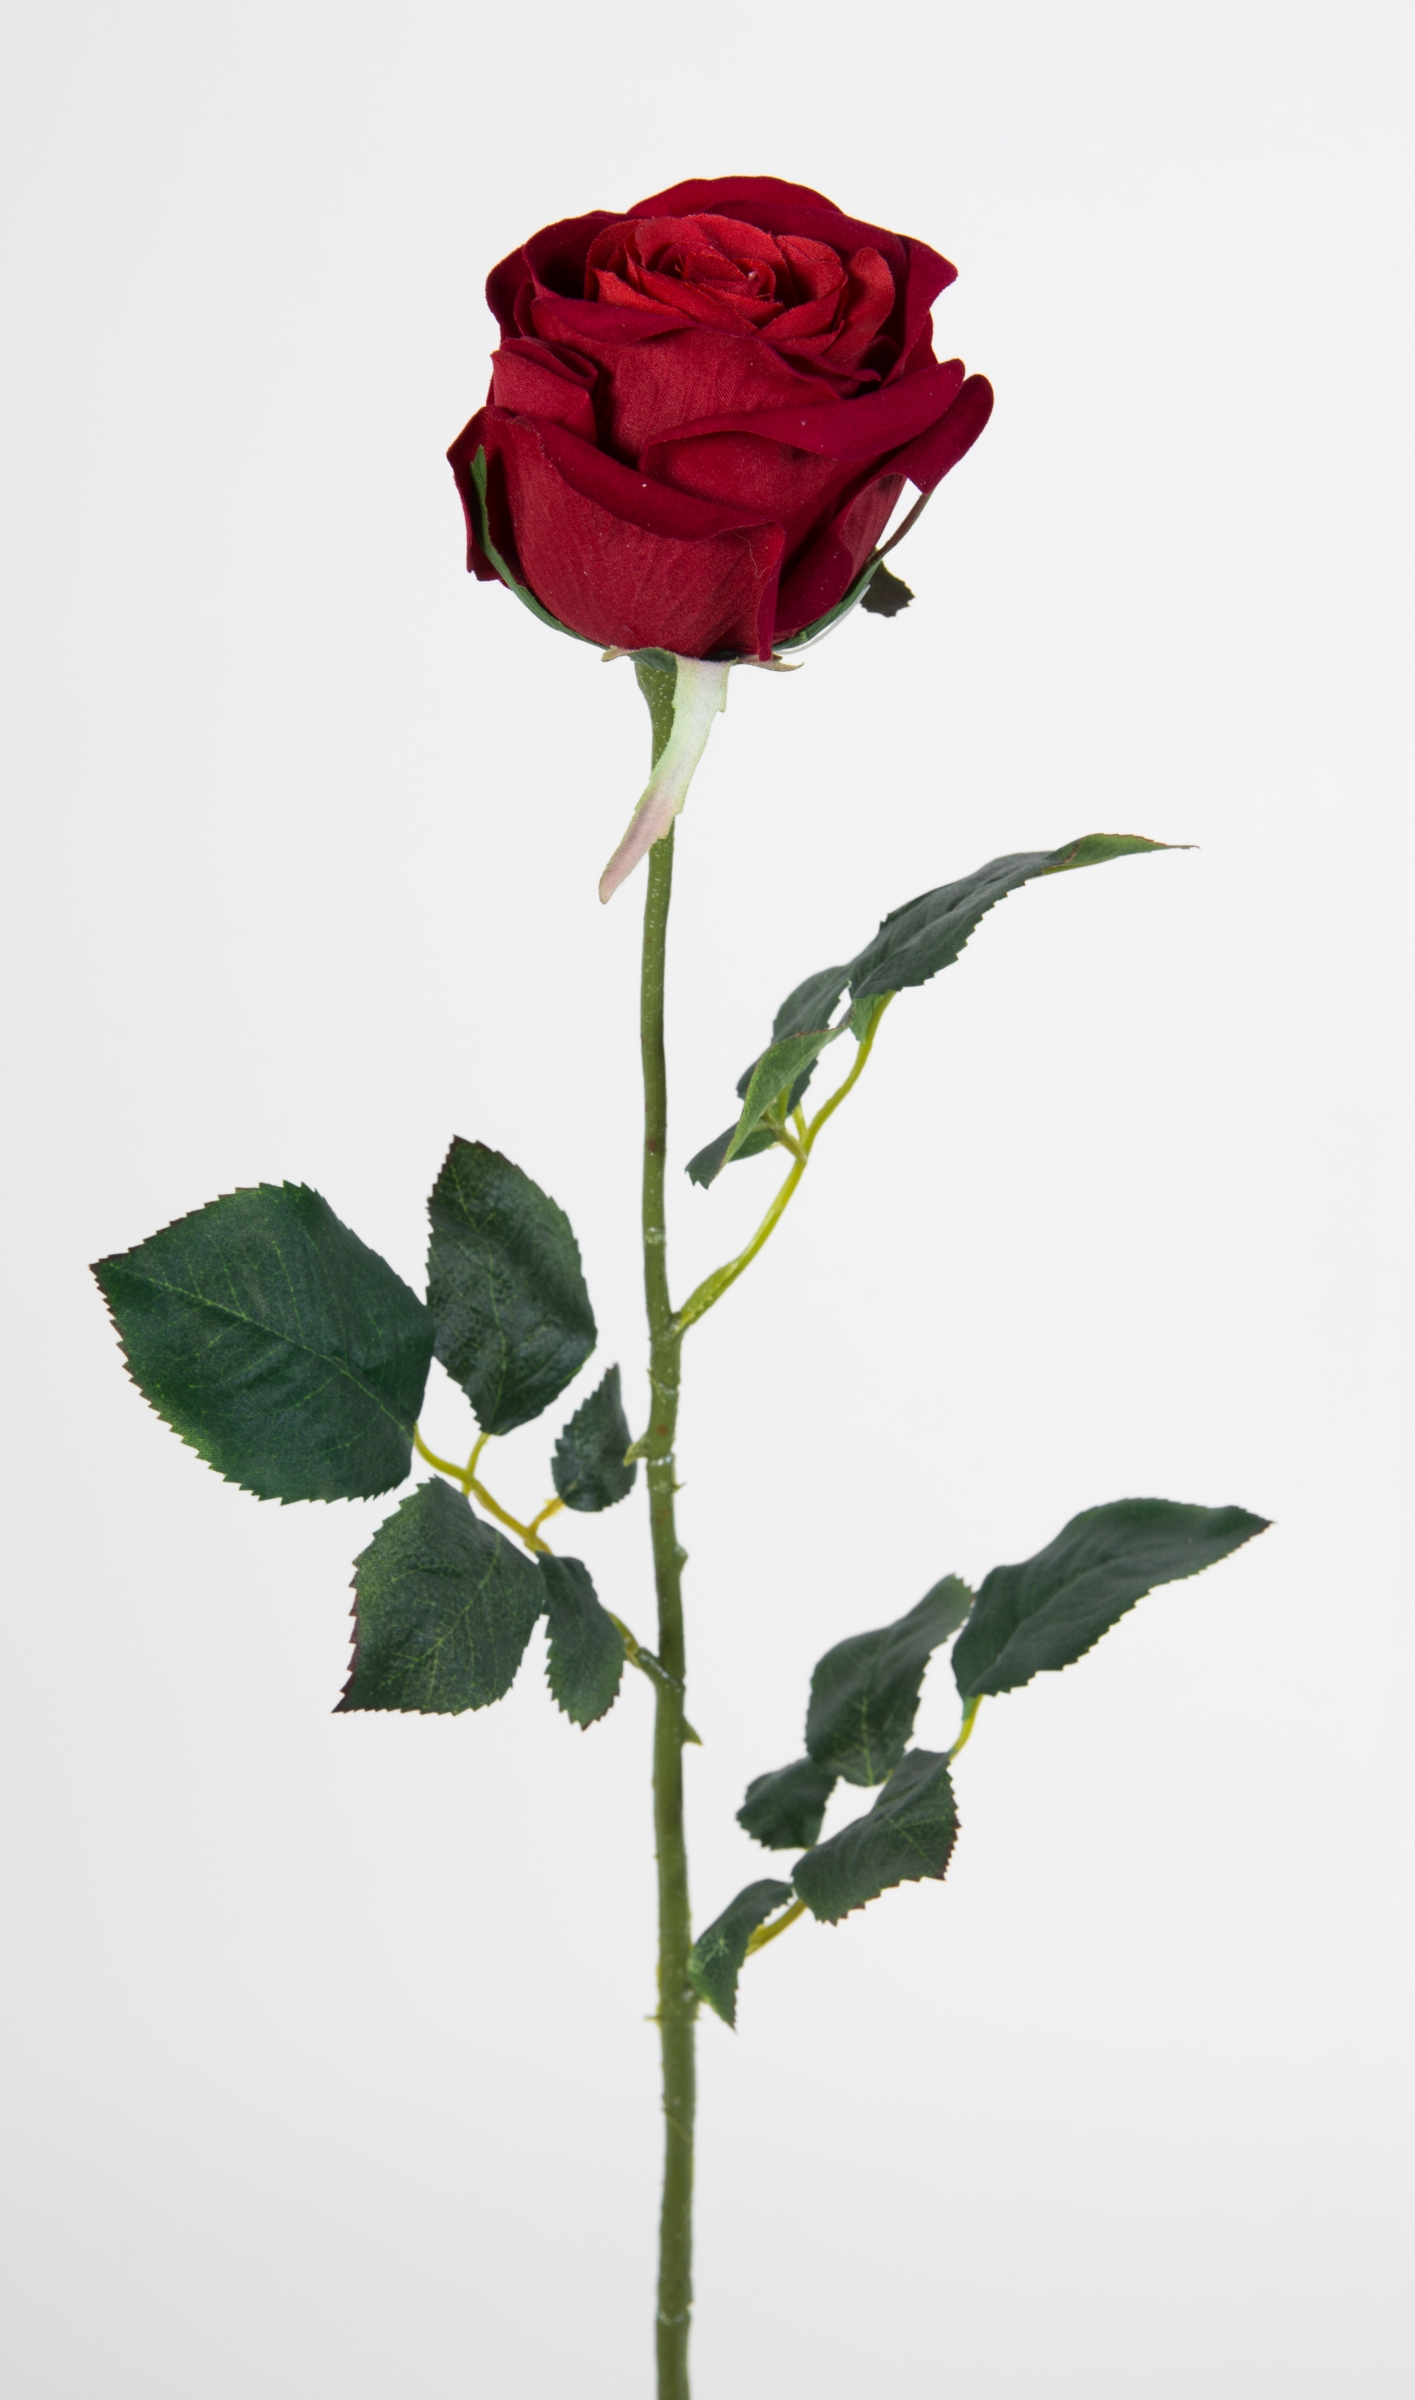 12 Stück Baccararose 68cm rot PM Kunstblumen künstliche Rose Rosen Blumen Seidenblumen